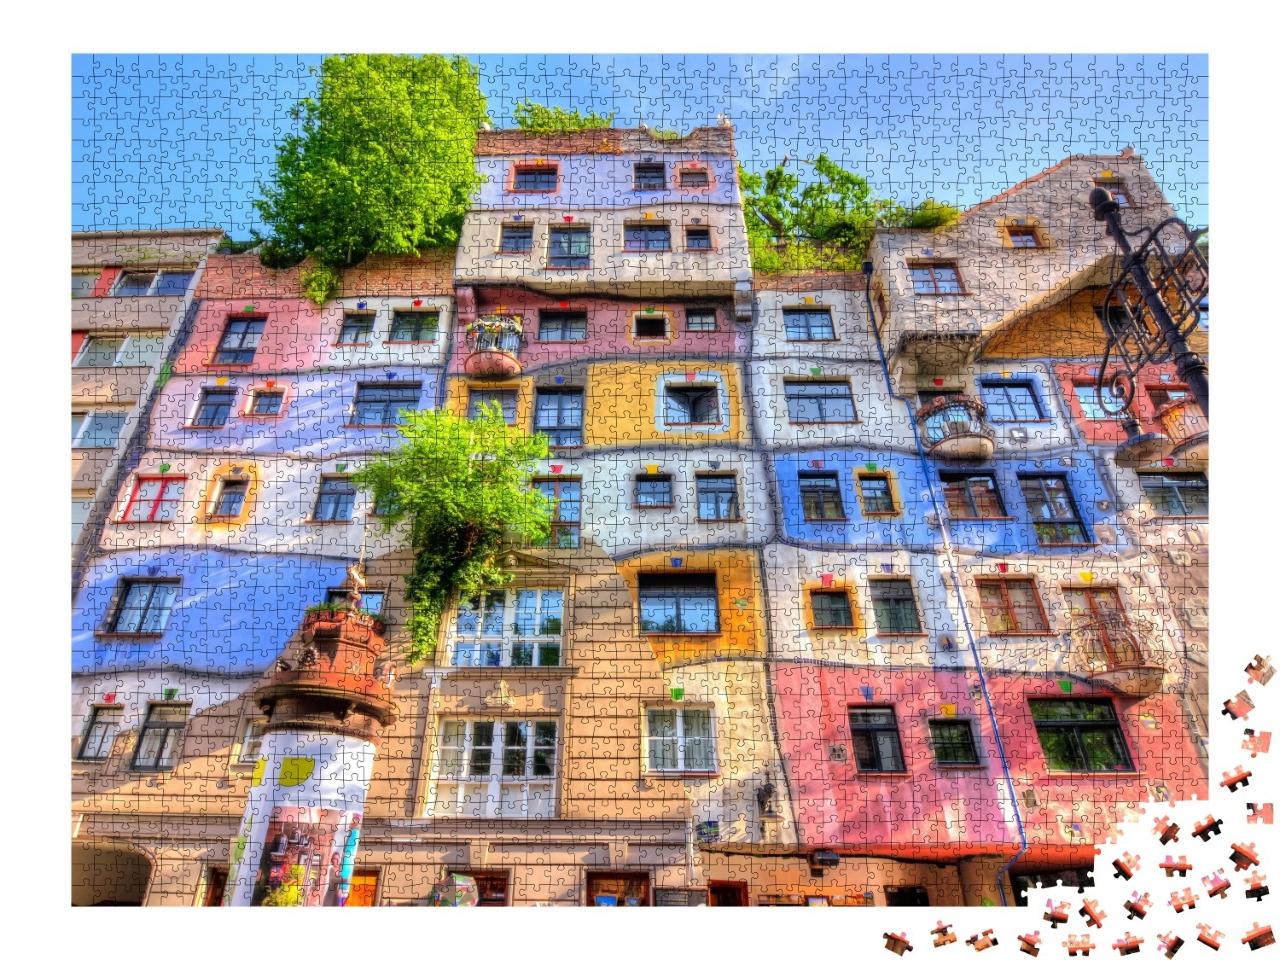 Puzzle de 2000 pièces « Maison Hundertwasser à Vienne, Autriche »